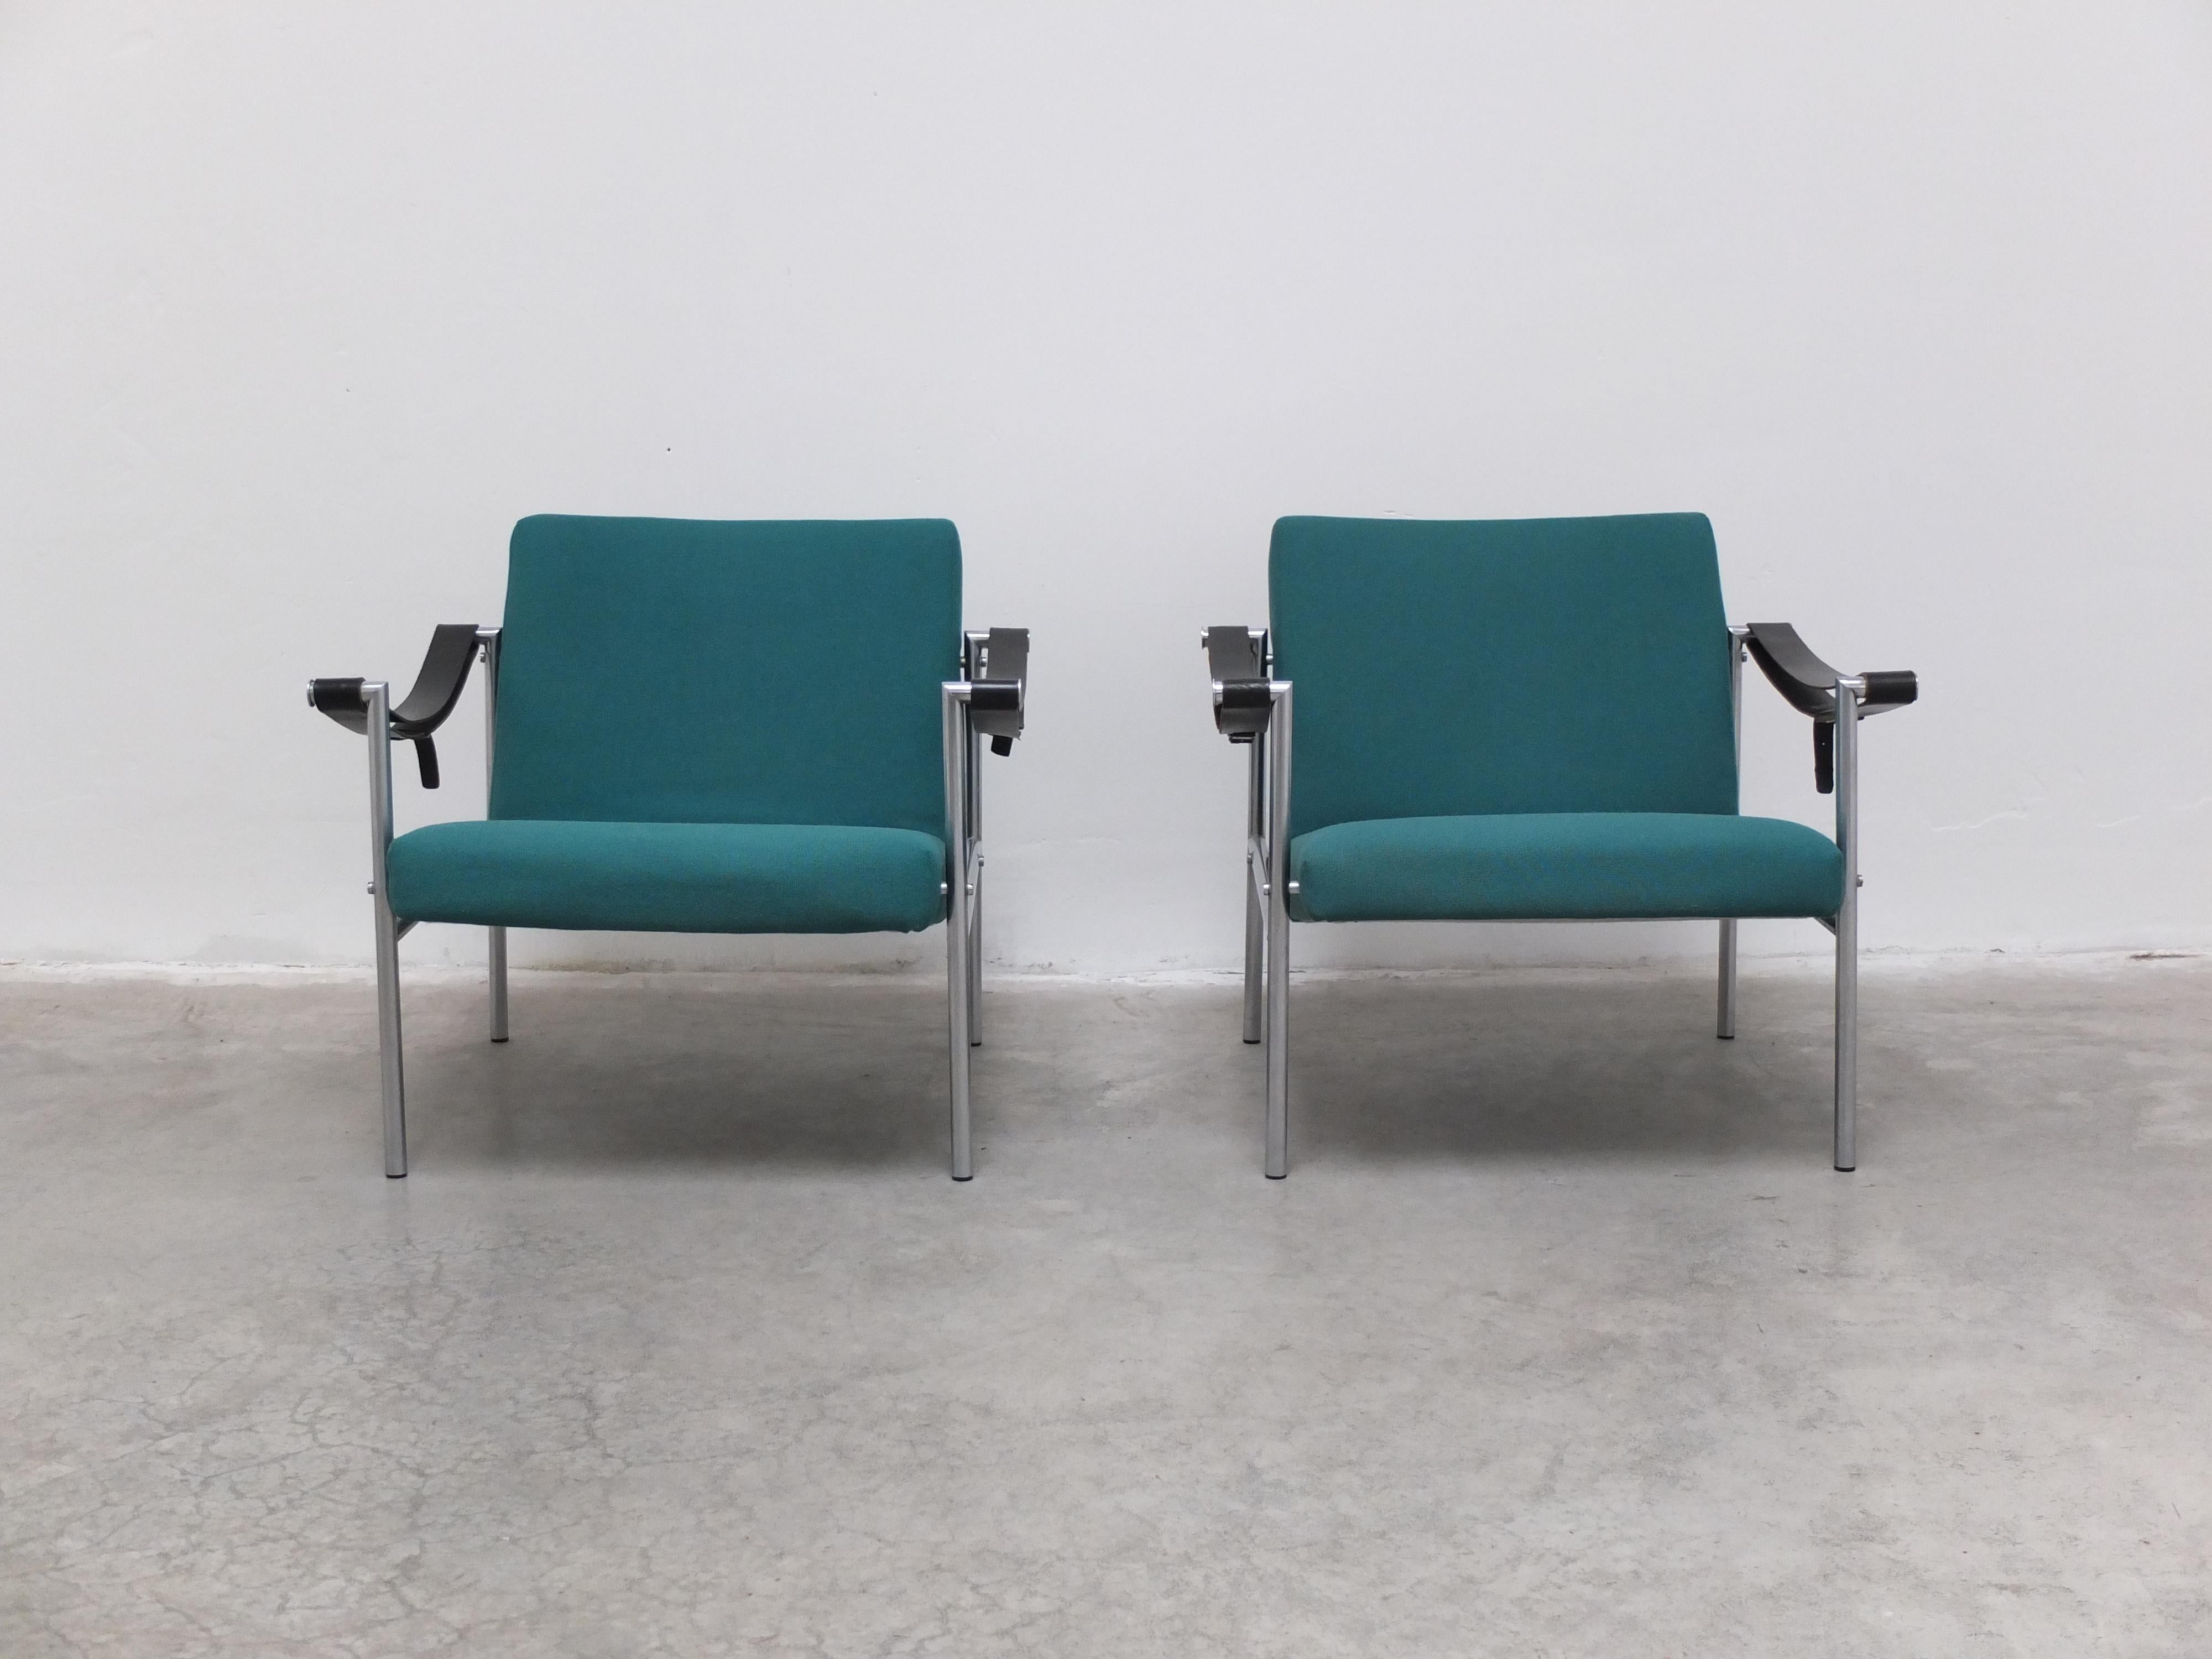 Magnifique paire de chaises longues modèle 'SZ08' conçues par Martin Visser en collaboration avec Dick Van Der Net pour 't Spectrum en 1960. Ce modèle n'a été produit que pendant quelques années dans les années 1960 et est donc beaucoup plus